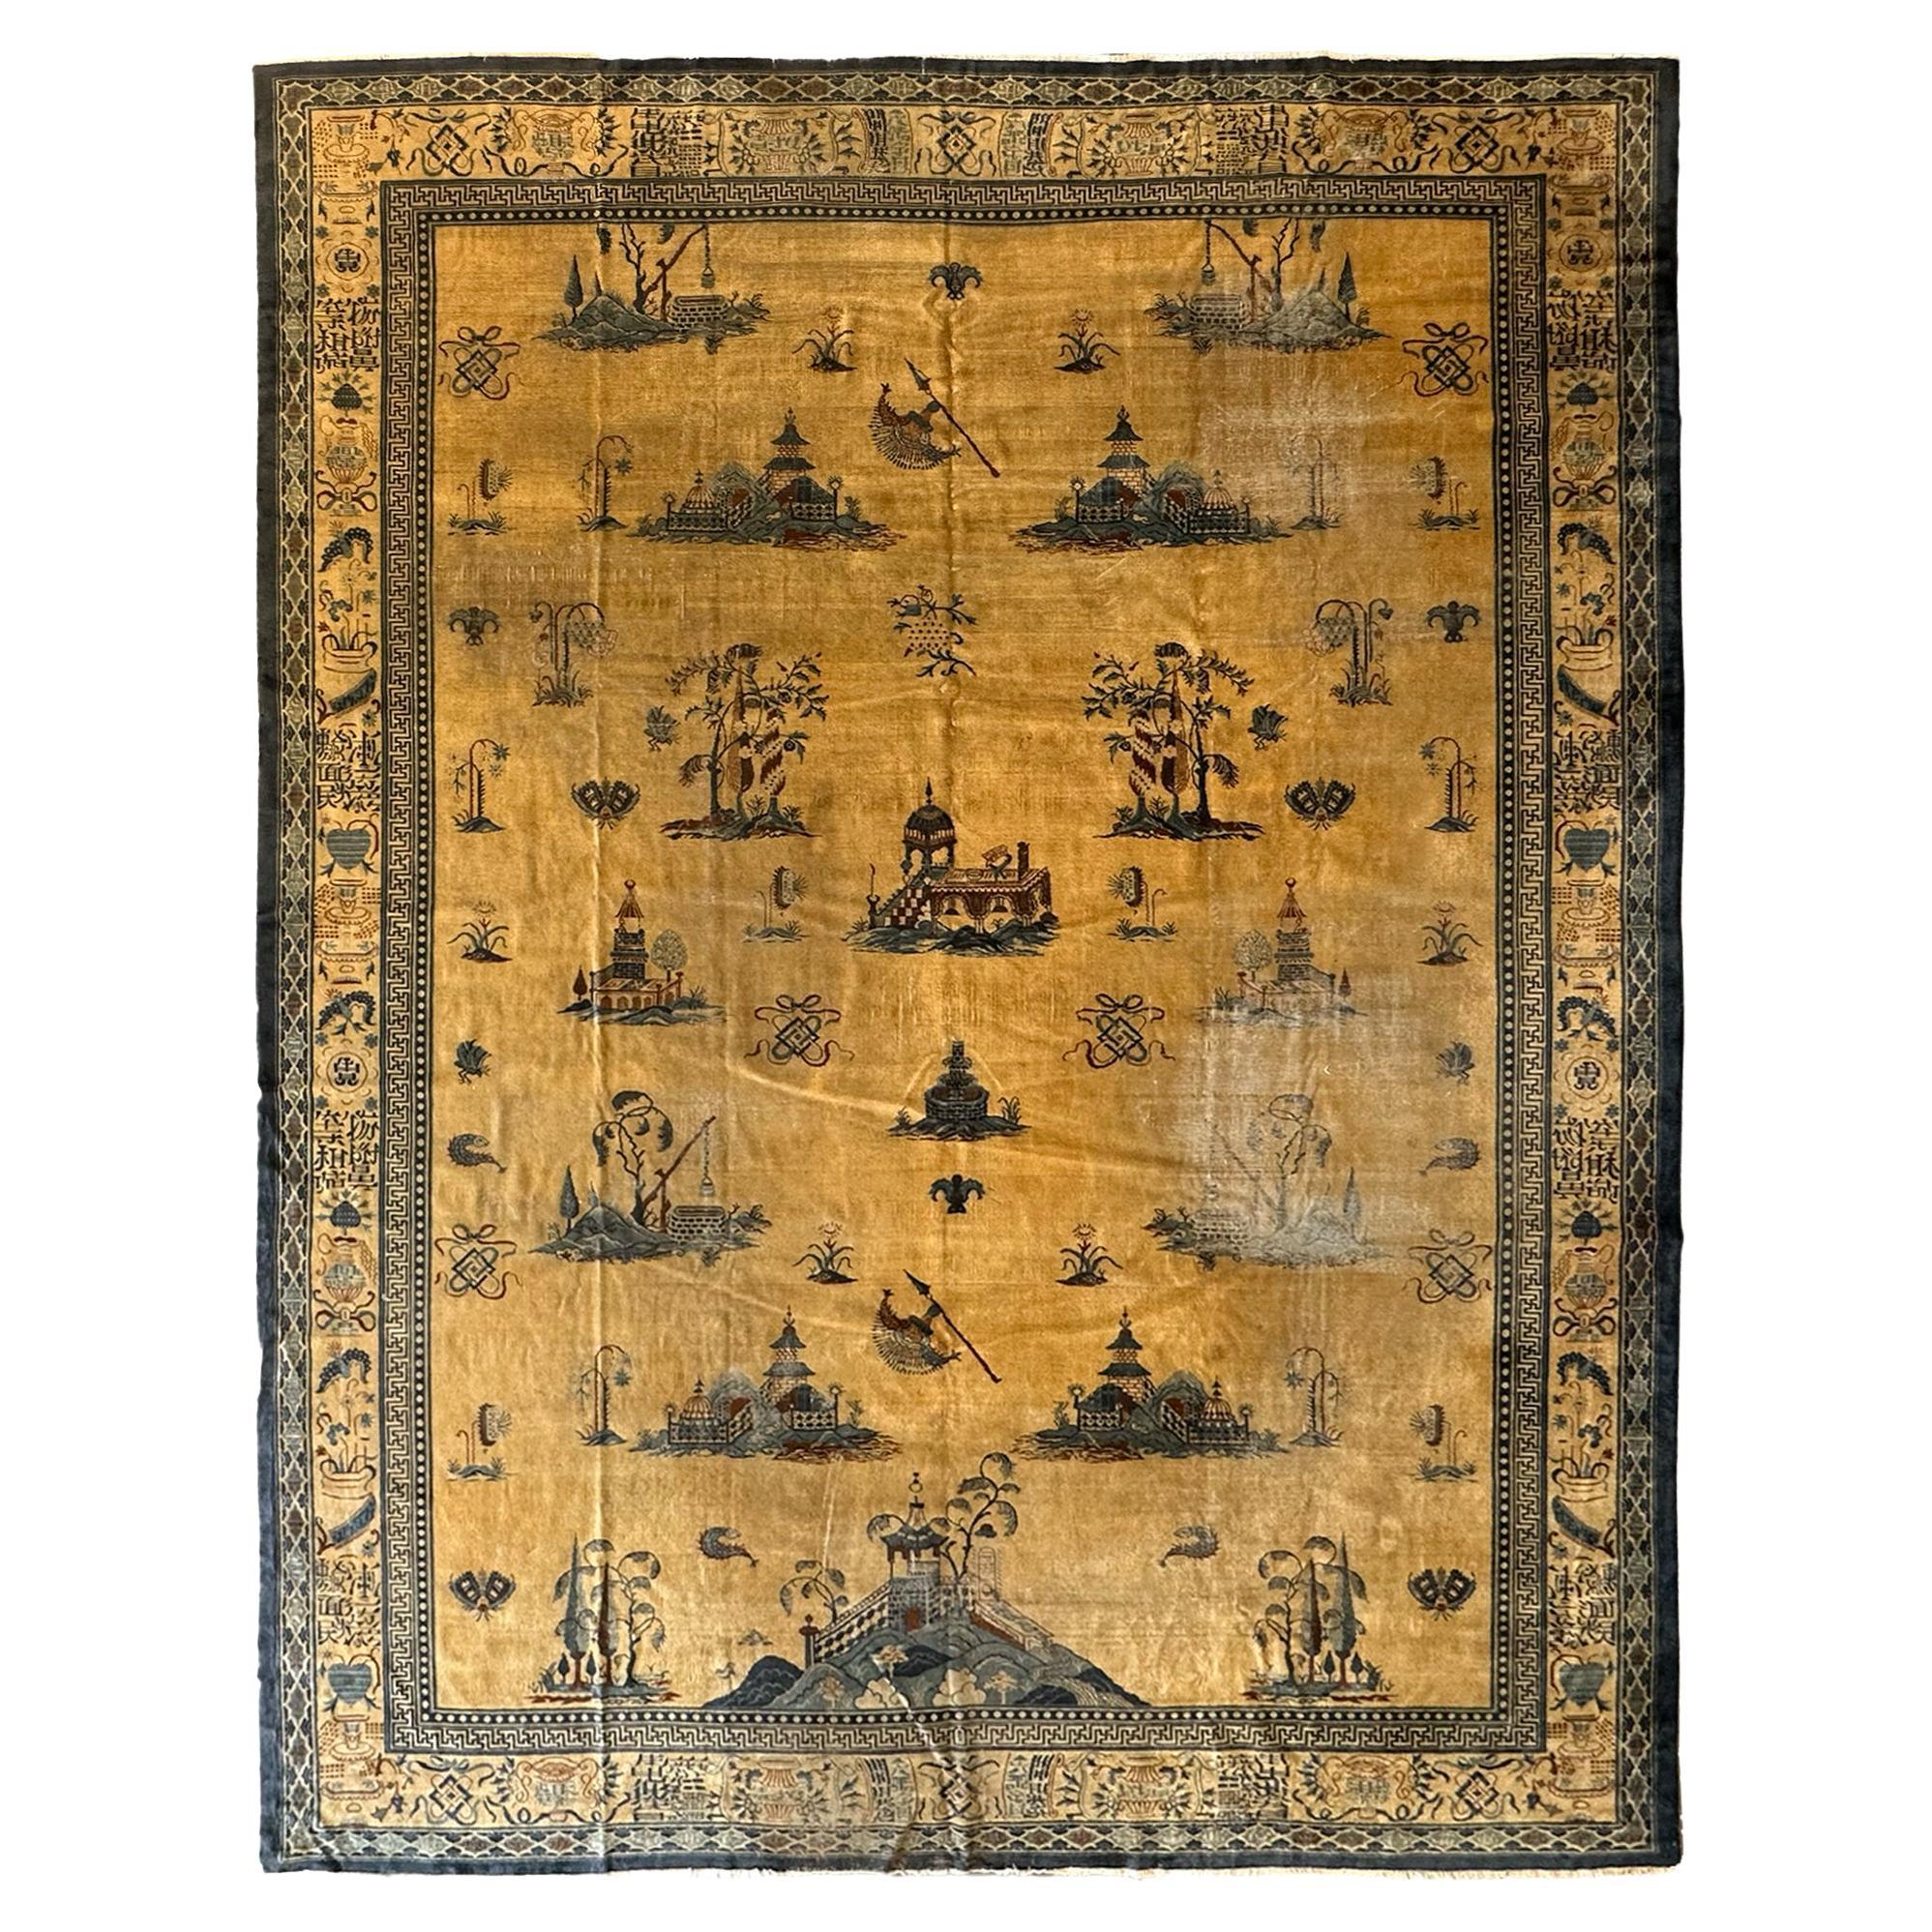 Seltener antiker chinesischer Teppich Pre-1900 Chinesische Symbole 12x15 361cm x 427cm Pre-1900